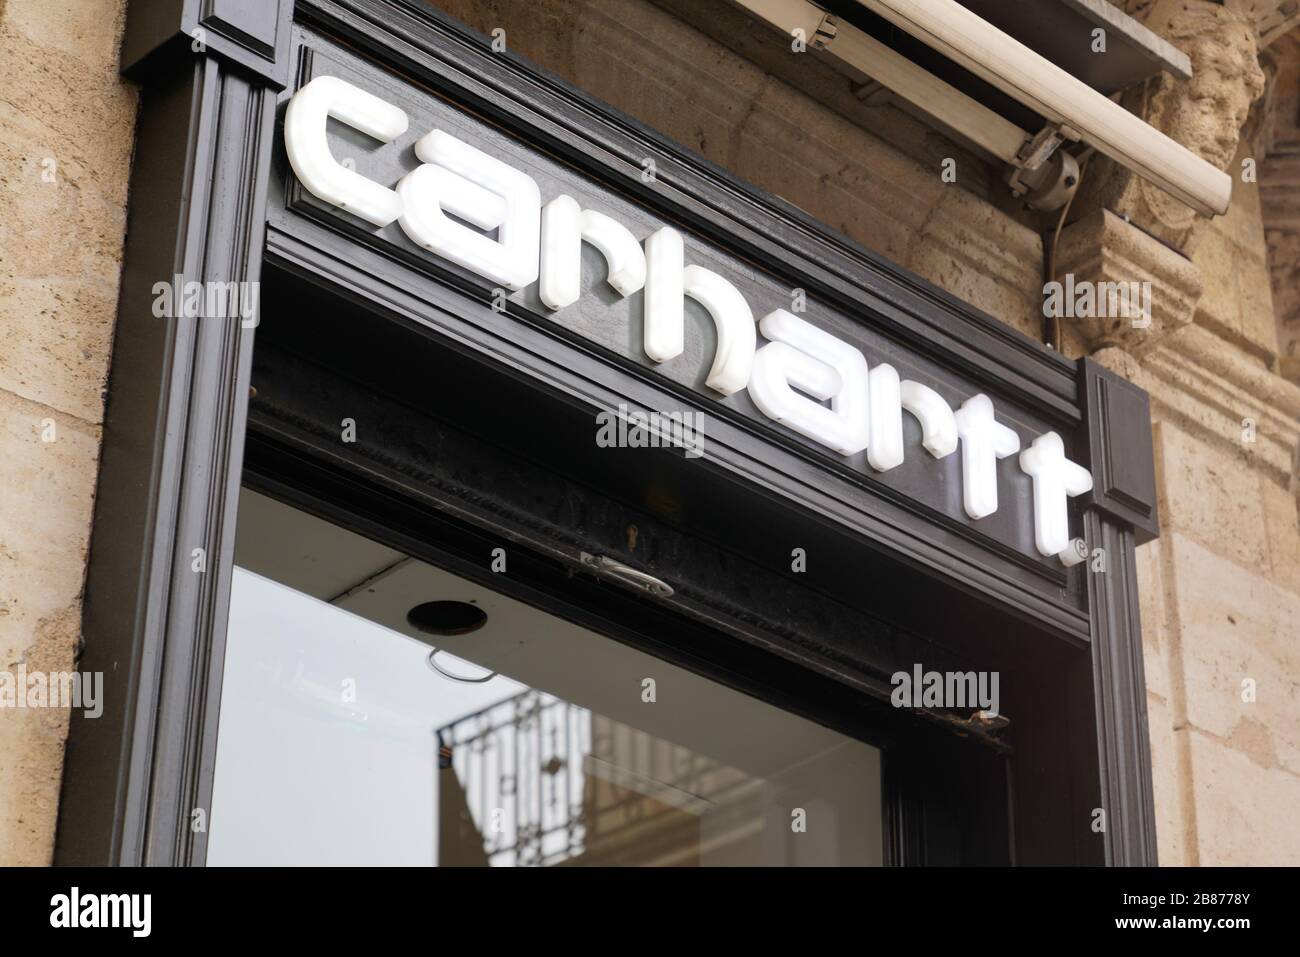 Bordeaux , Aquitaine / France - 11 07 2019 : Carhartt logo sign shop Apparel Store work wear boutique Stock Photo